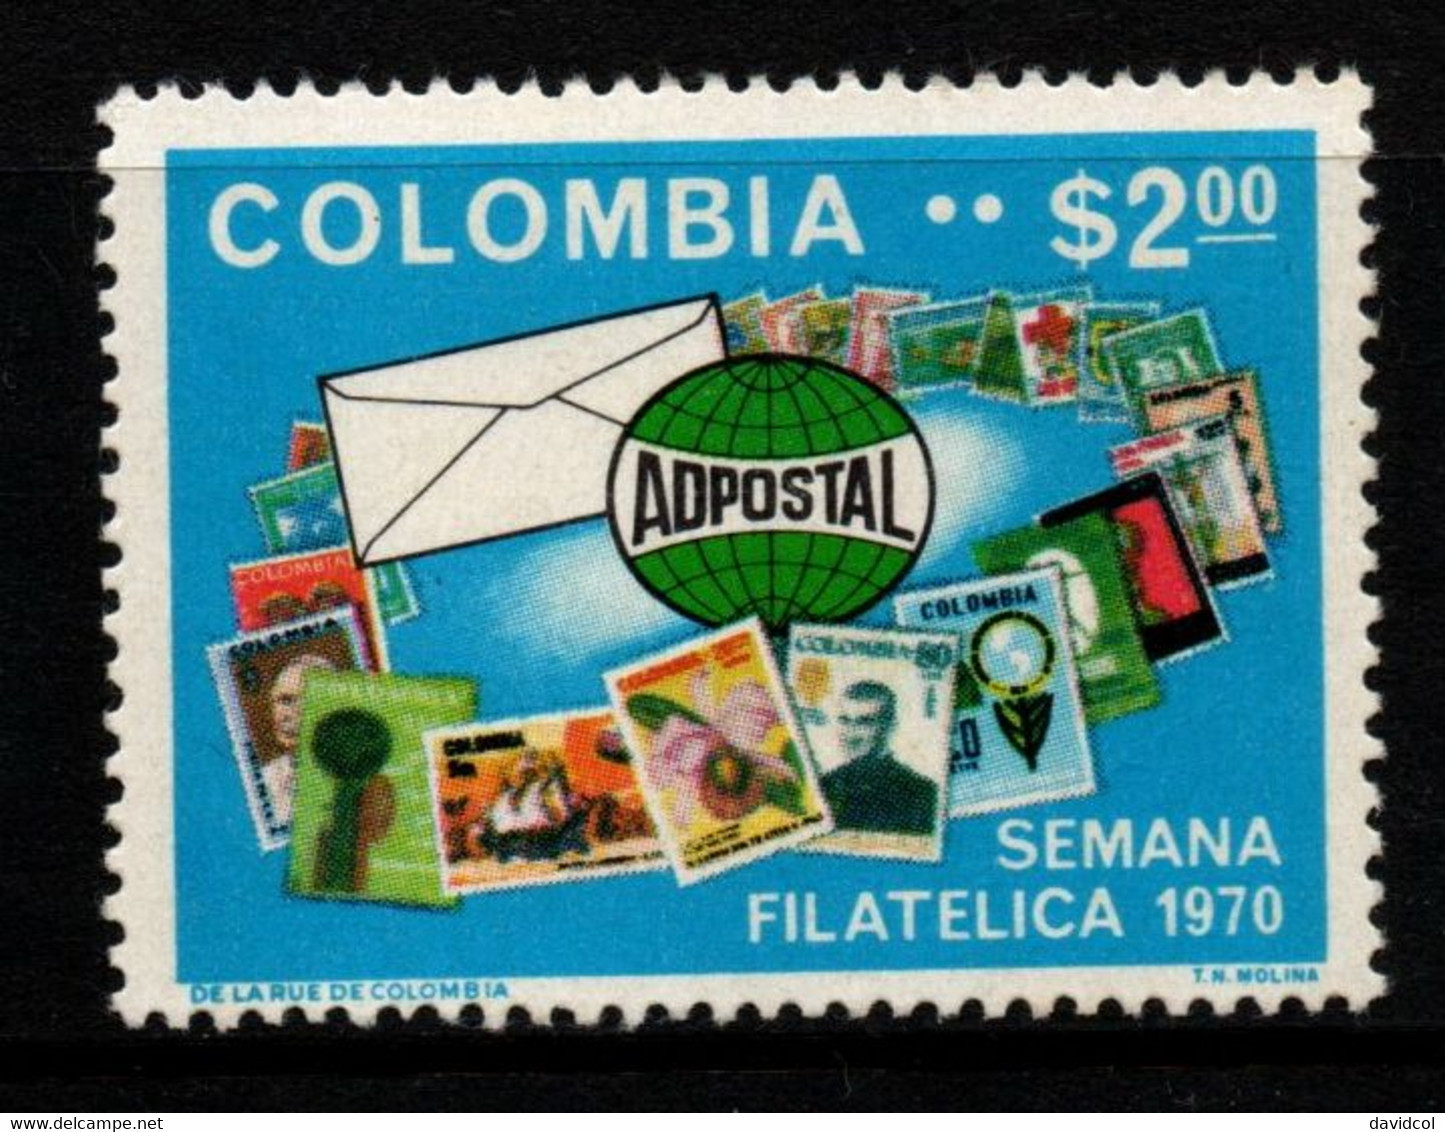 08- KOLUMBIEN – 1970- MI#:1171- MNH- PHILATELIC WEEK – STAMP ON STAMP - Kolumbien